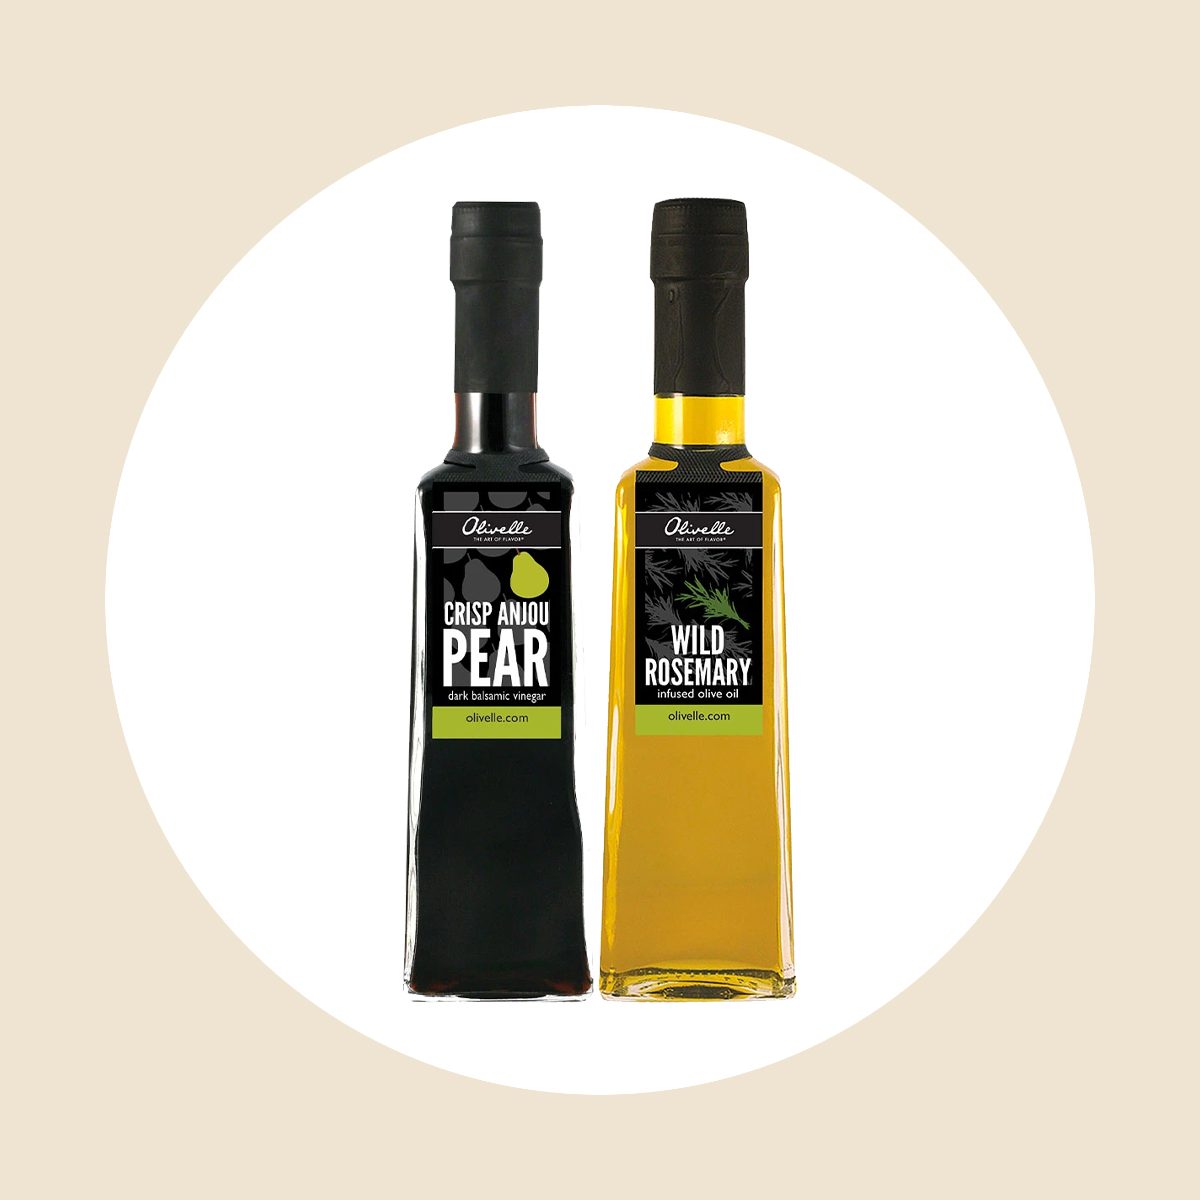 优质橄榄油